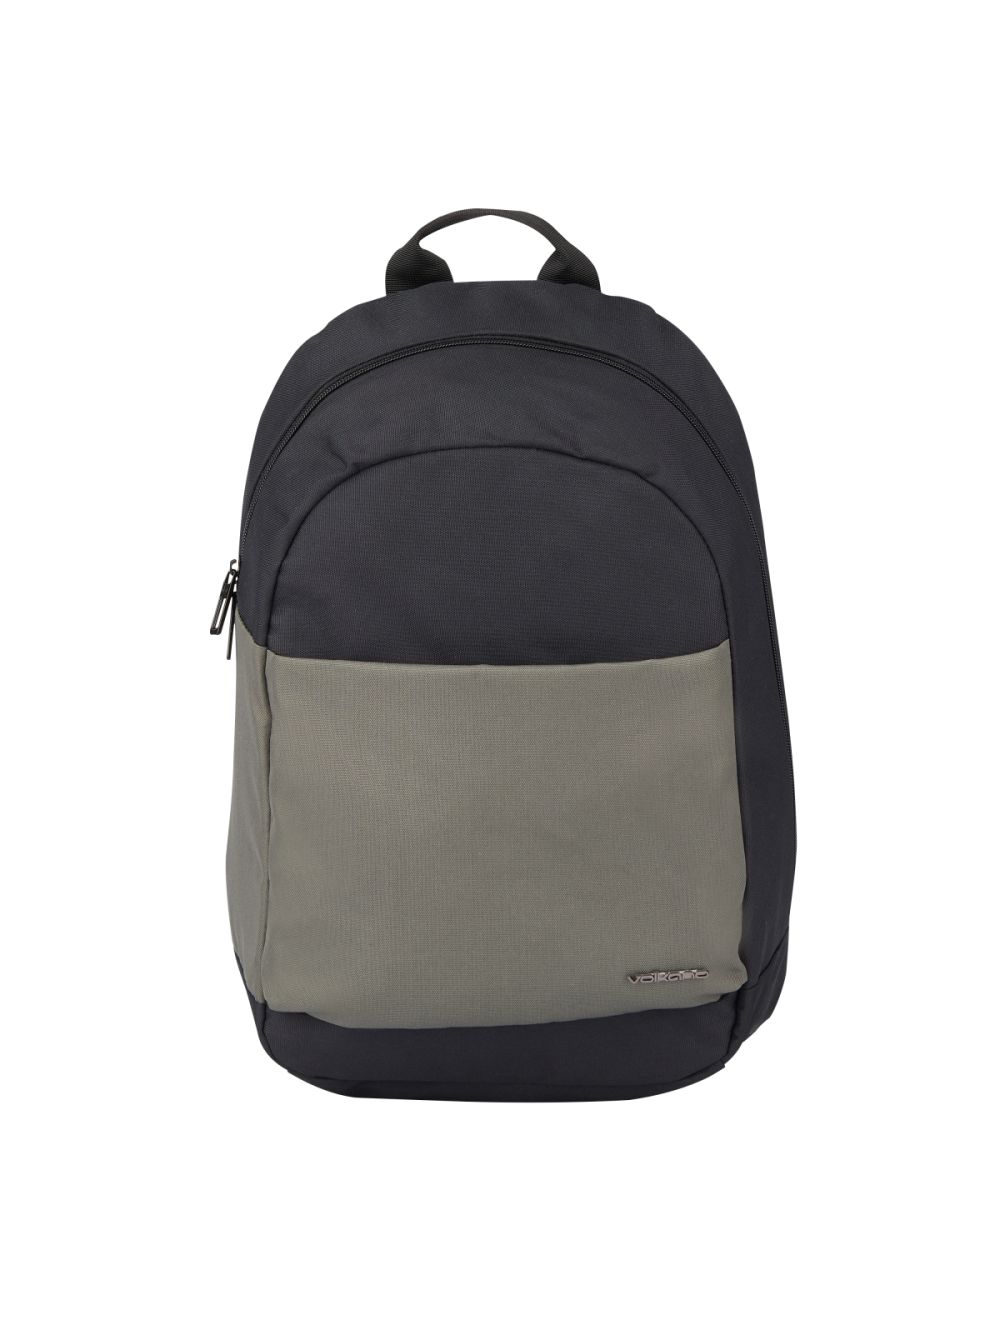 Kingsons Evolution Series 15.6 Laptop Backpack